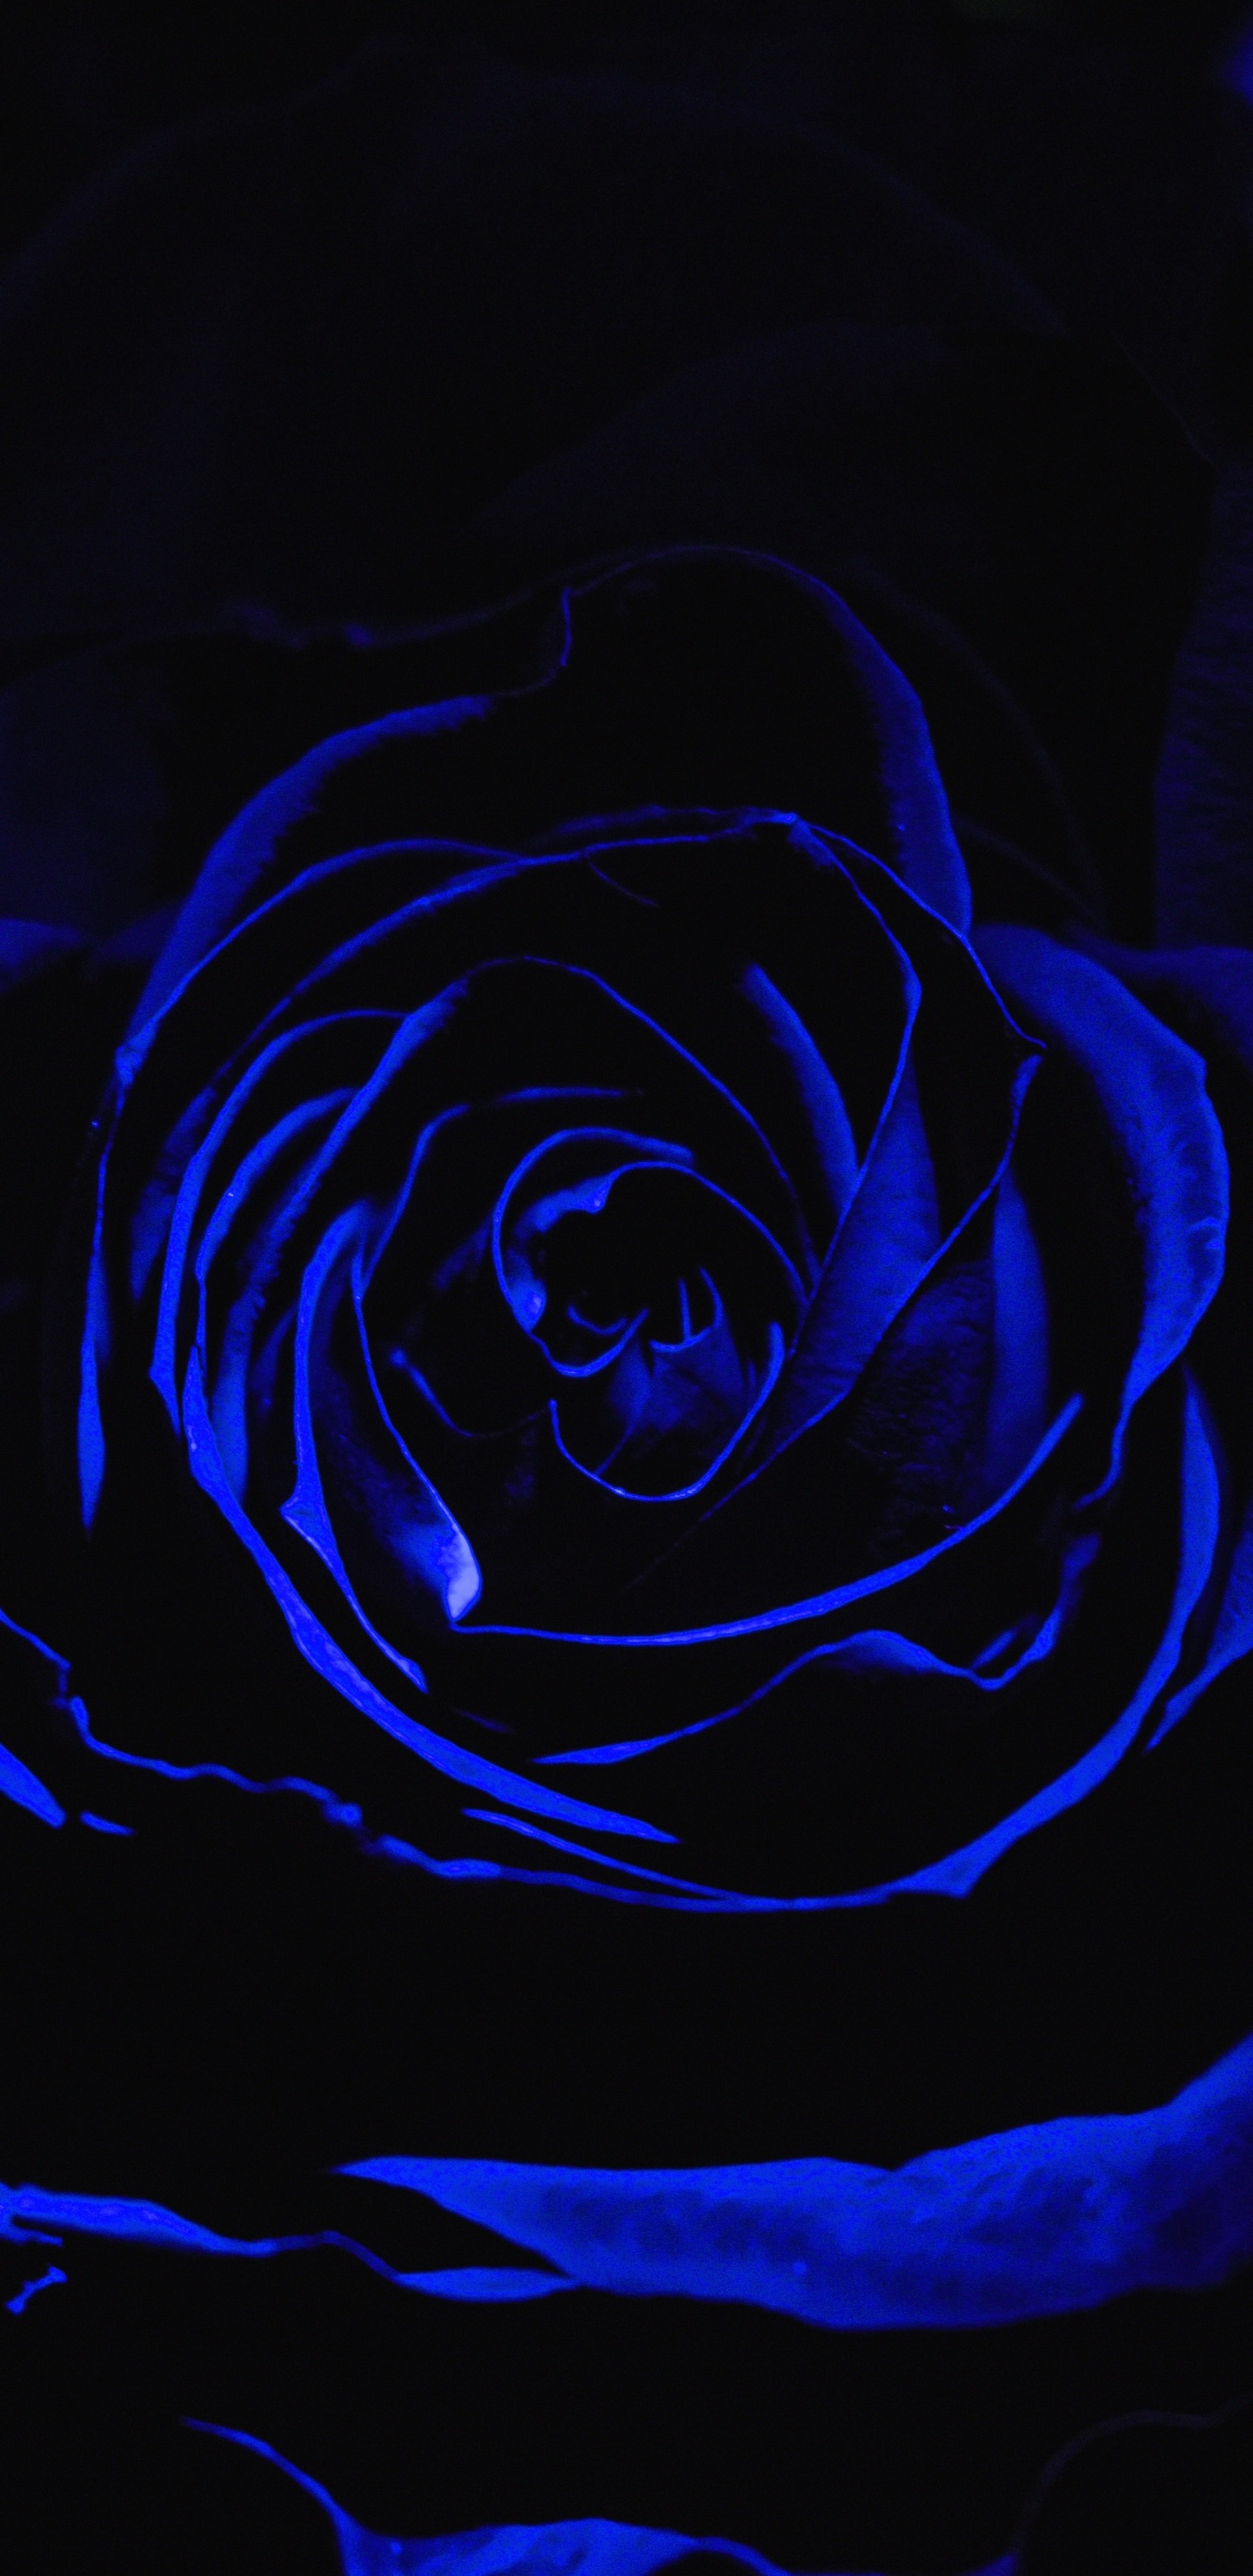 Rosa Azul en Fotografía de Cerca. Wallpaper in 1440x2960 Resolution